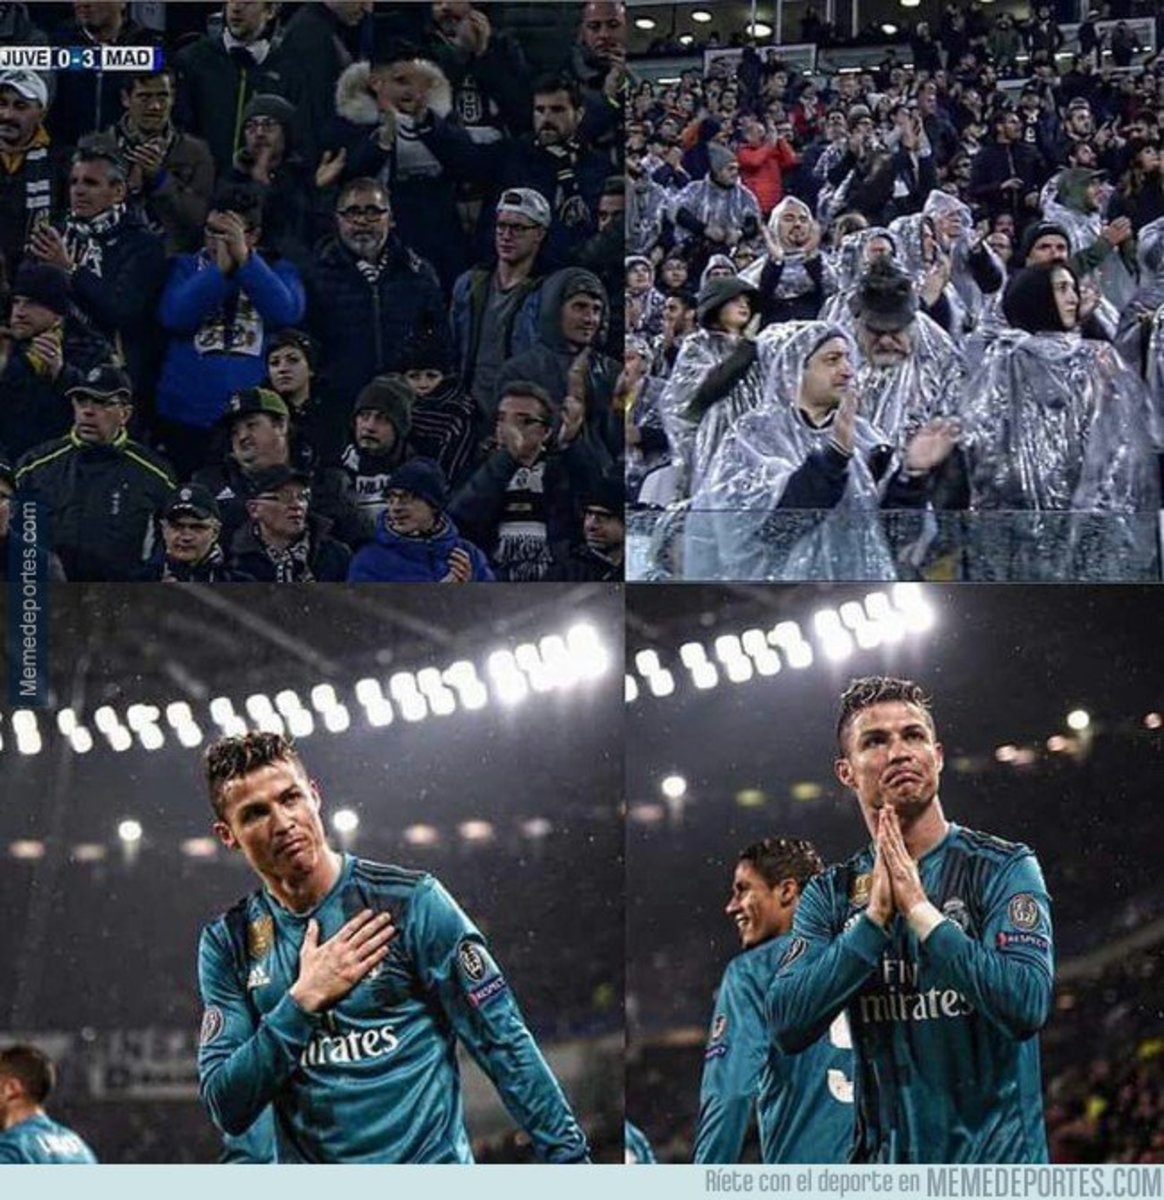 1028067 - Aficionados de la Juventus aplaudiendo a Cristiano Ronaldo